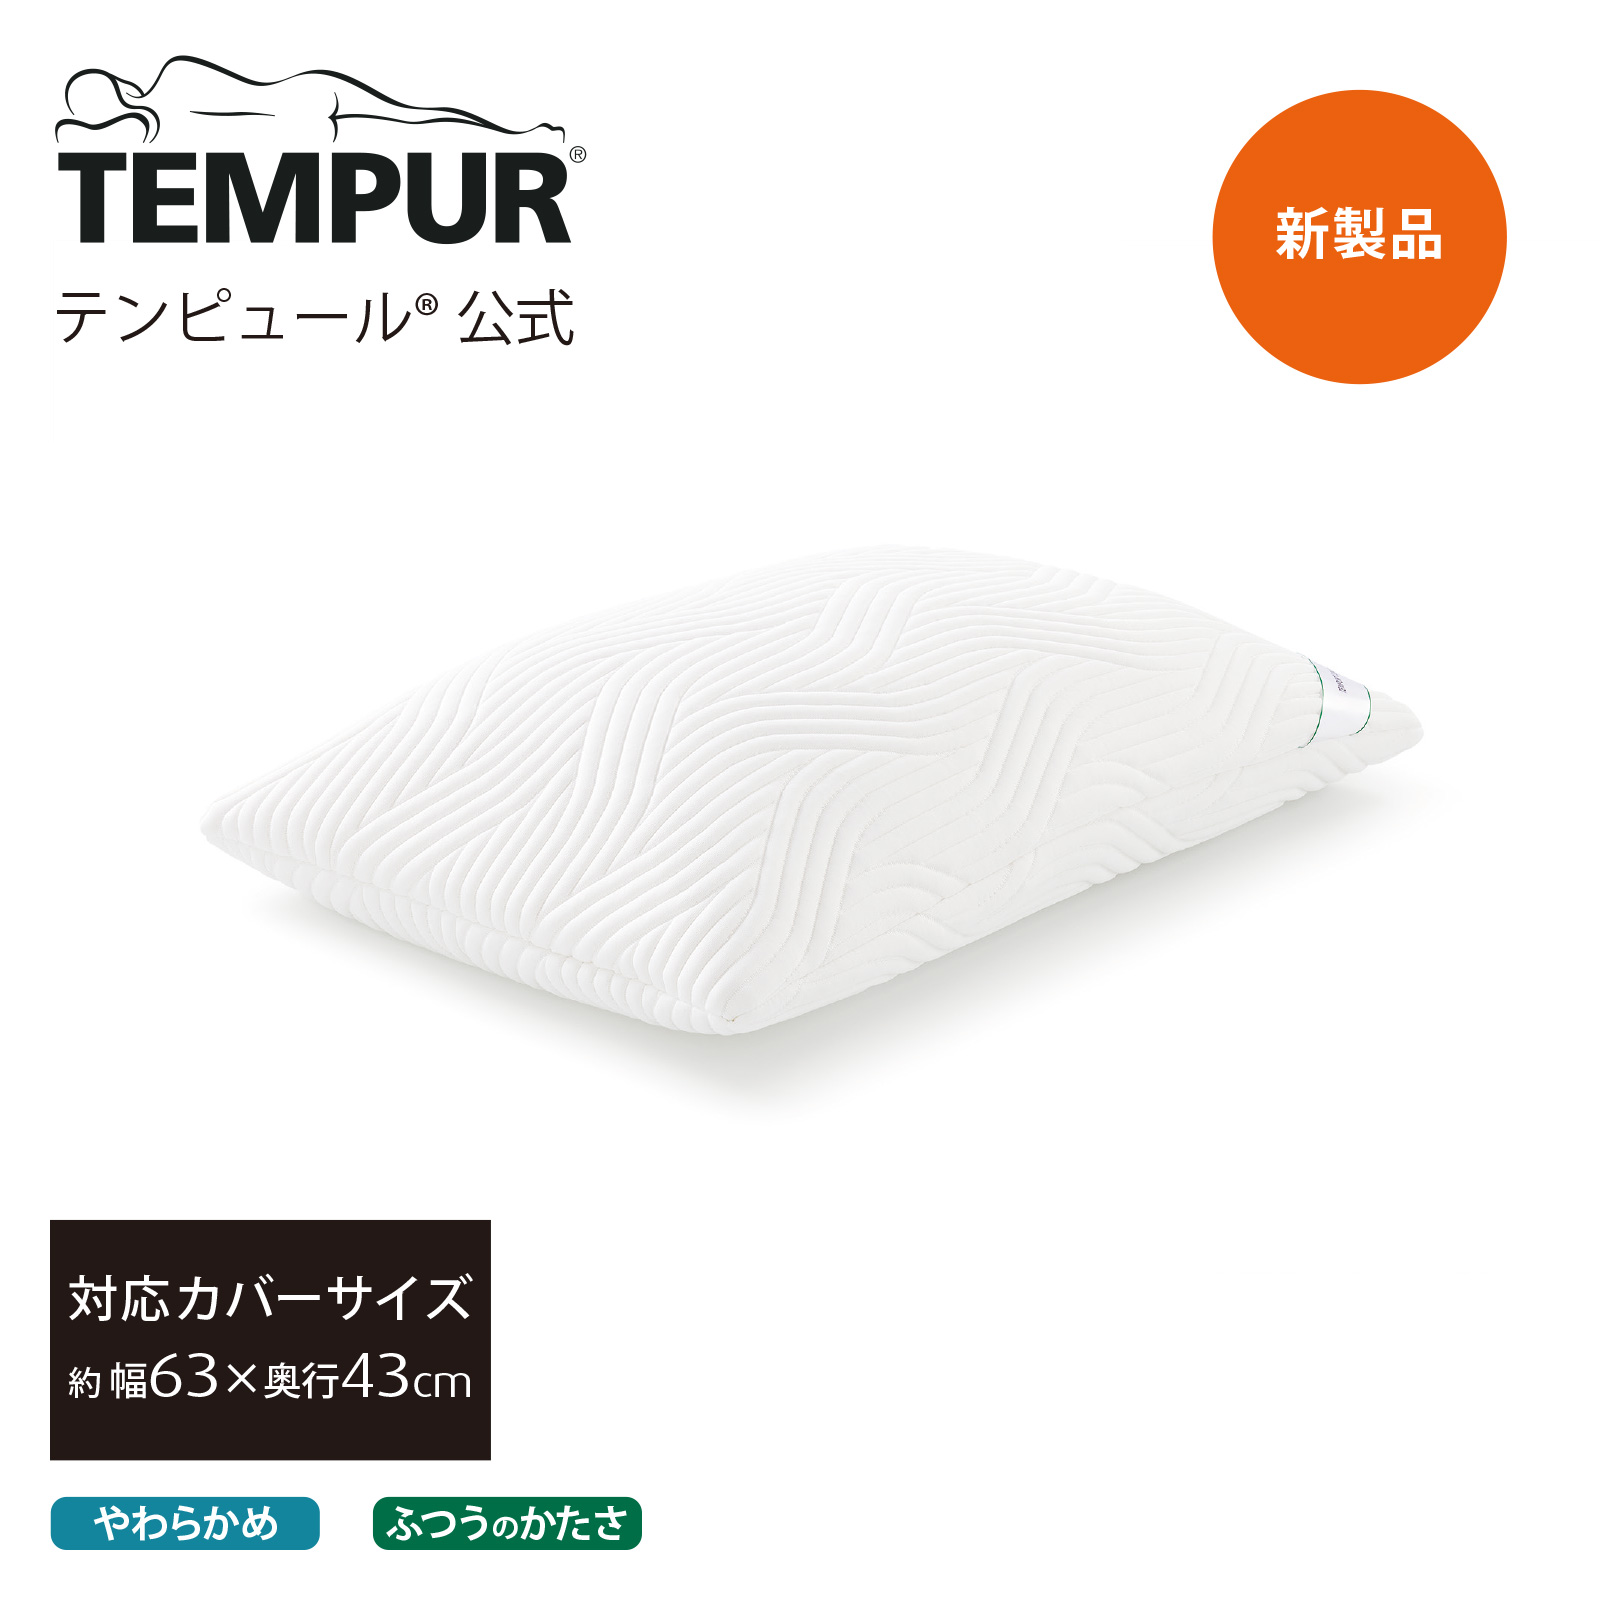 TEMPUR COMFORT 枕 枕カバー付き - 枕